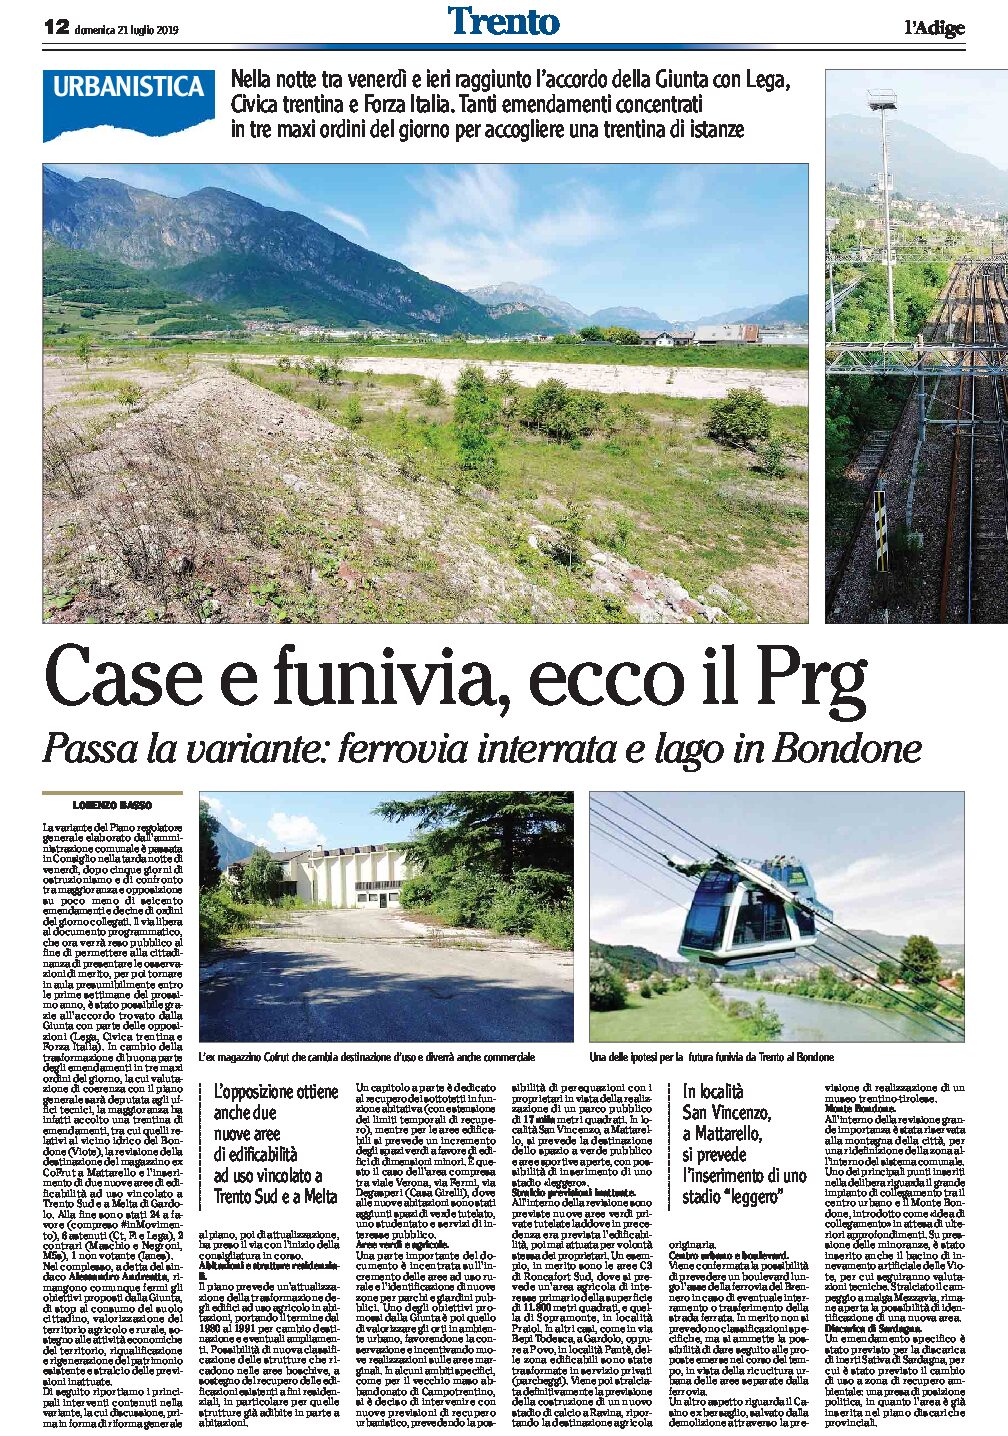 Trento, Prg: case e funivia. Passa la variante, ferrovia interrata e lago in Bondone